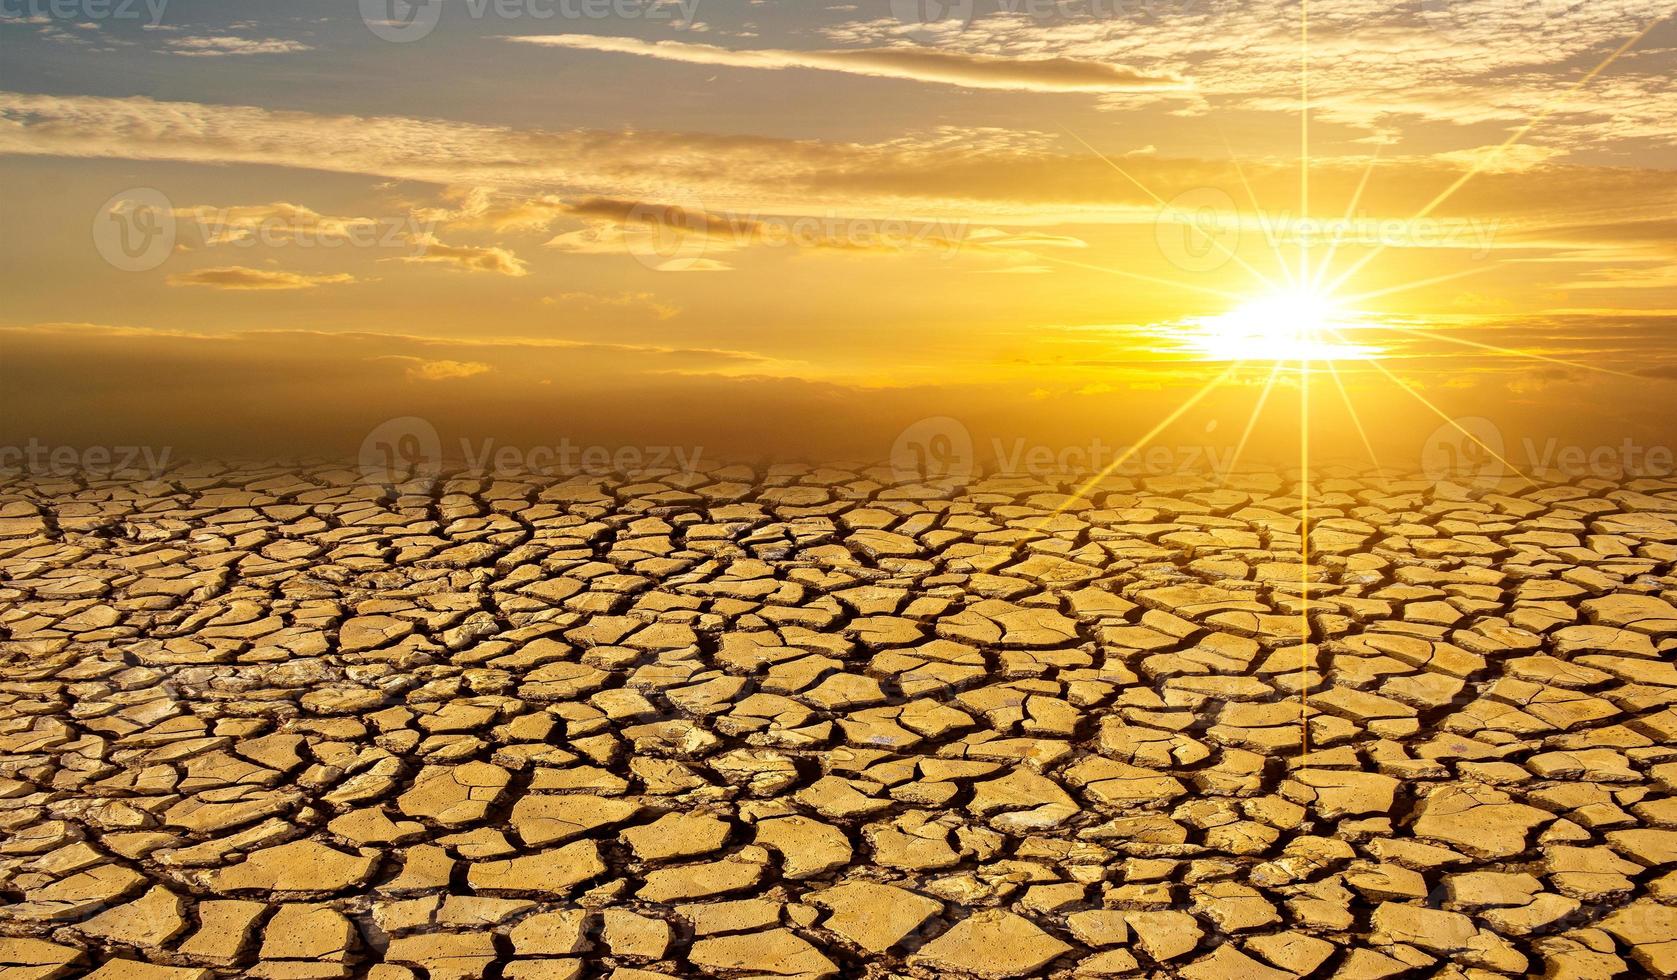 torr lera jord sol öken globalt avmaskning koncept knäckt bränd jord jord torka öken landskap dramatisk solnedgång foto